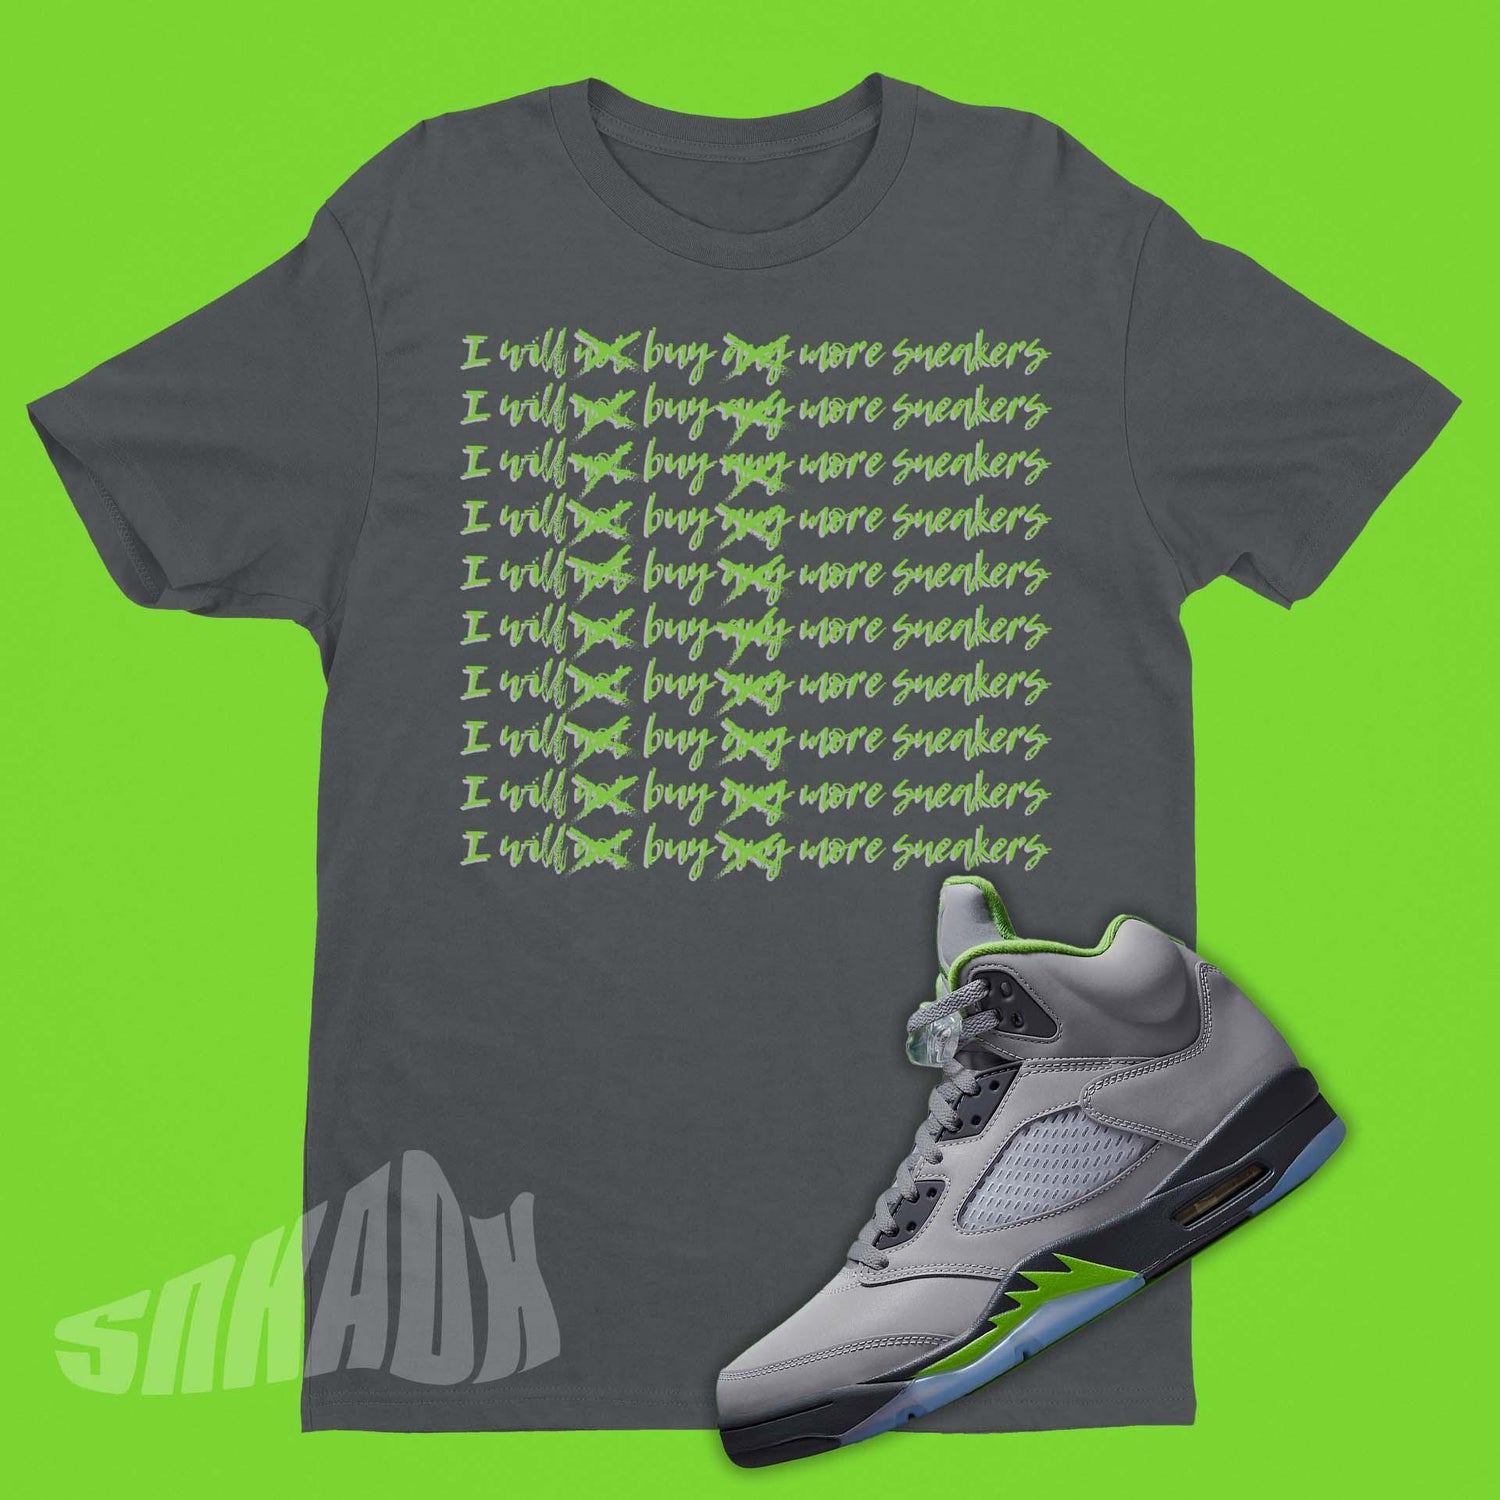 Shirt To Match Air Jordan 5 Green Bean